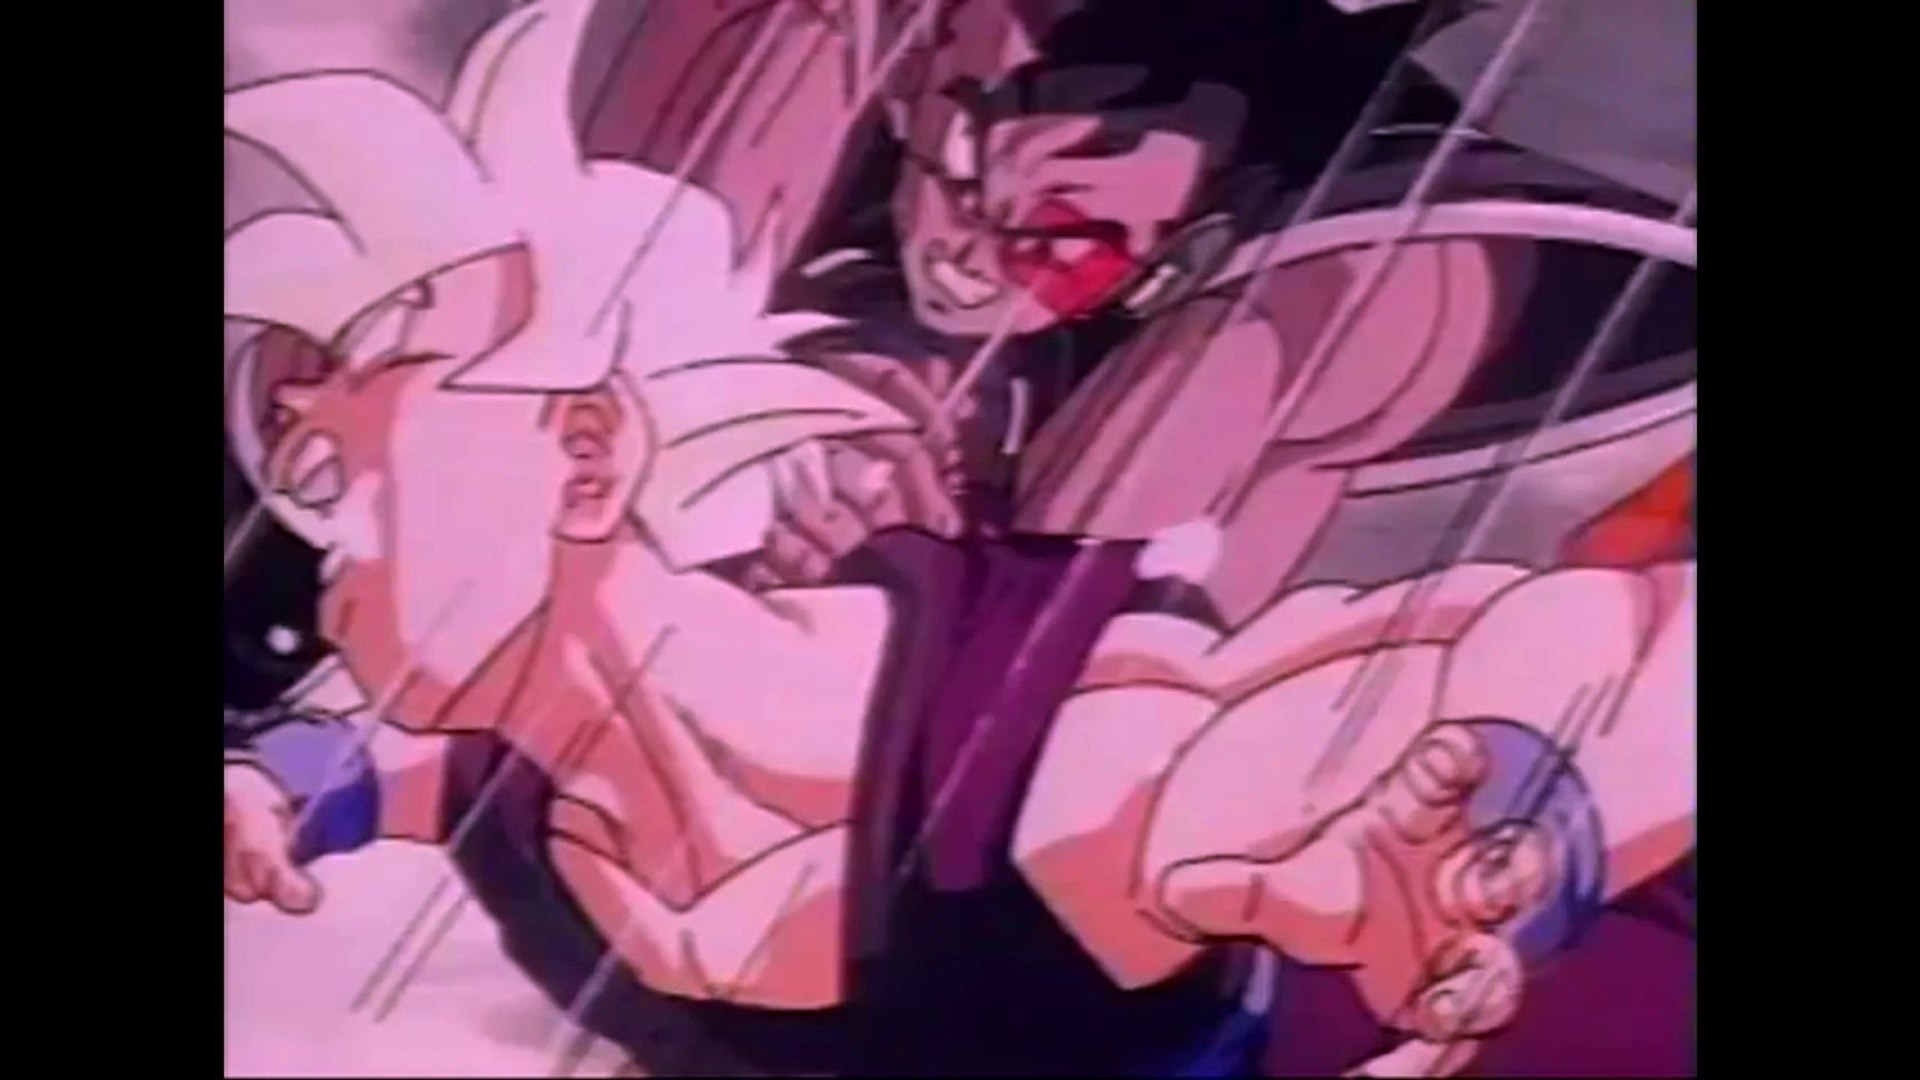 As transformações de Super Hero do Gohan e Piccolo se tornarão oficiais no  mangá de Dragon Ball Super - Critical Hits